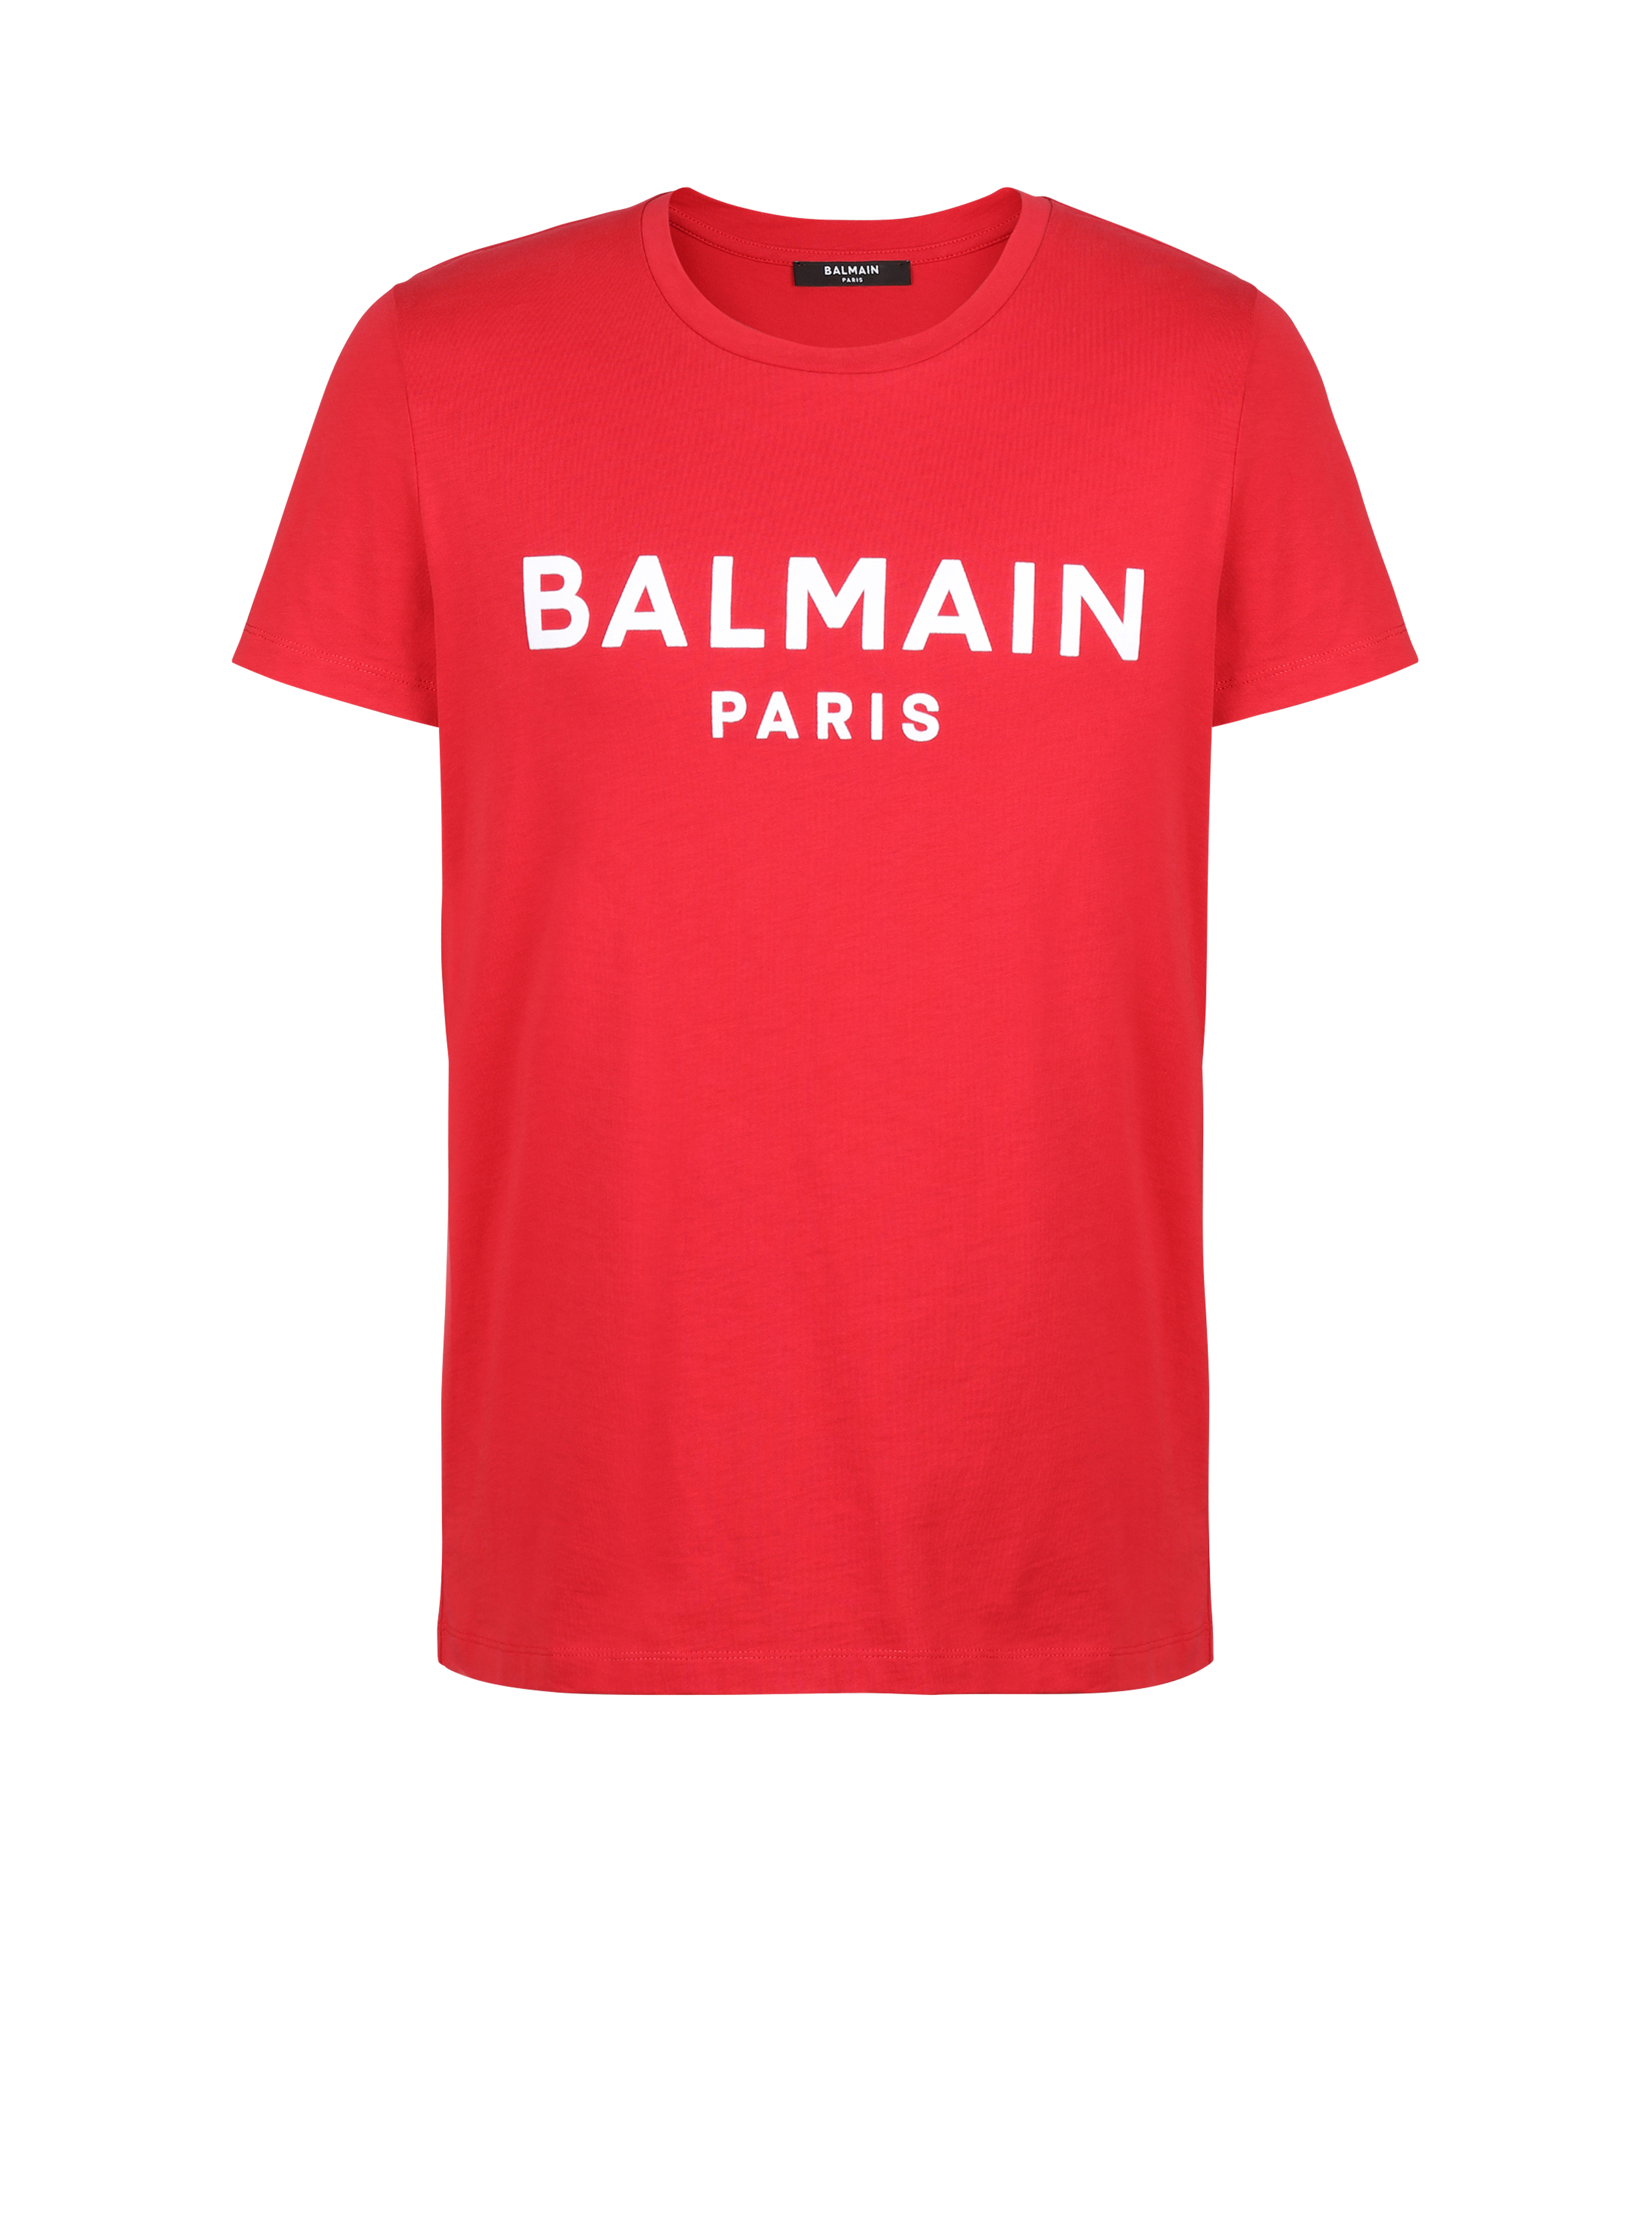 Camiseta de algodón con logotipo Balmain París flocado, rojo